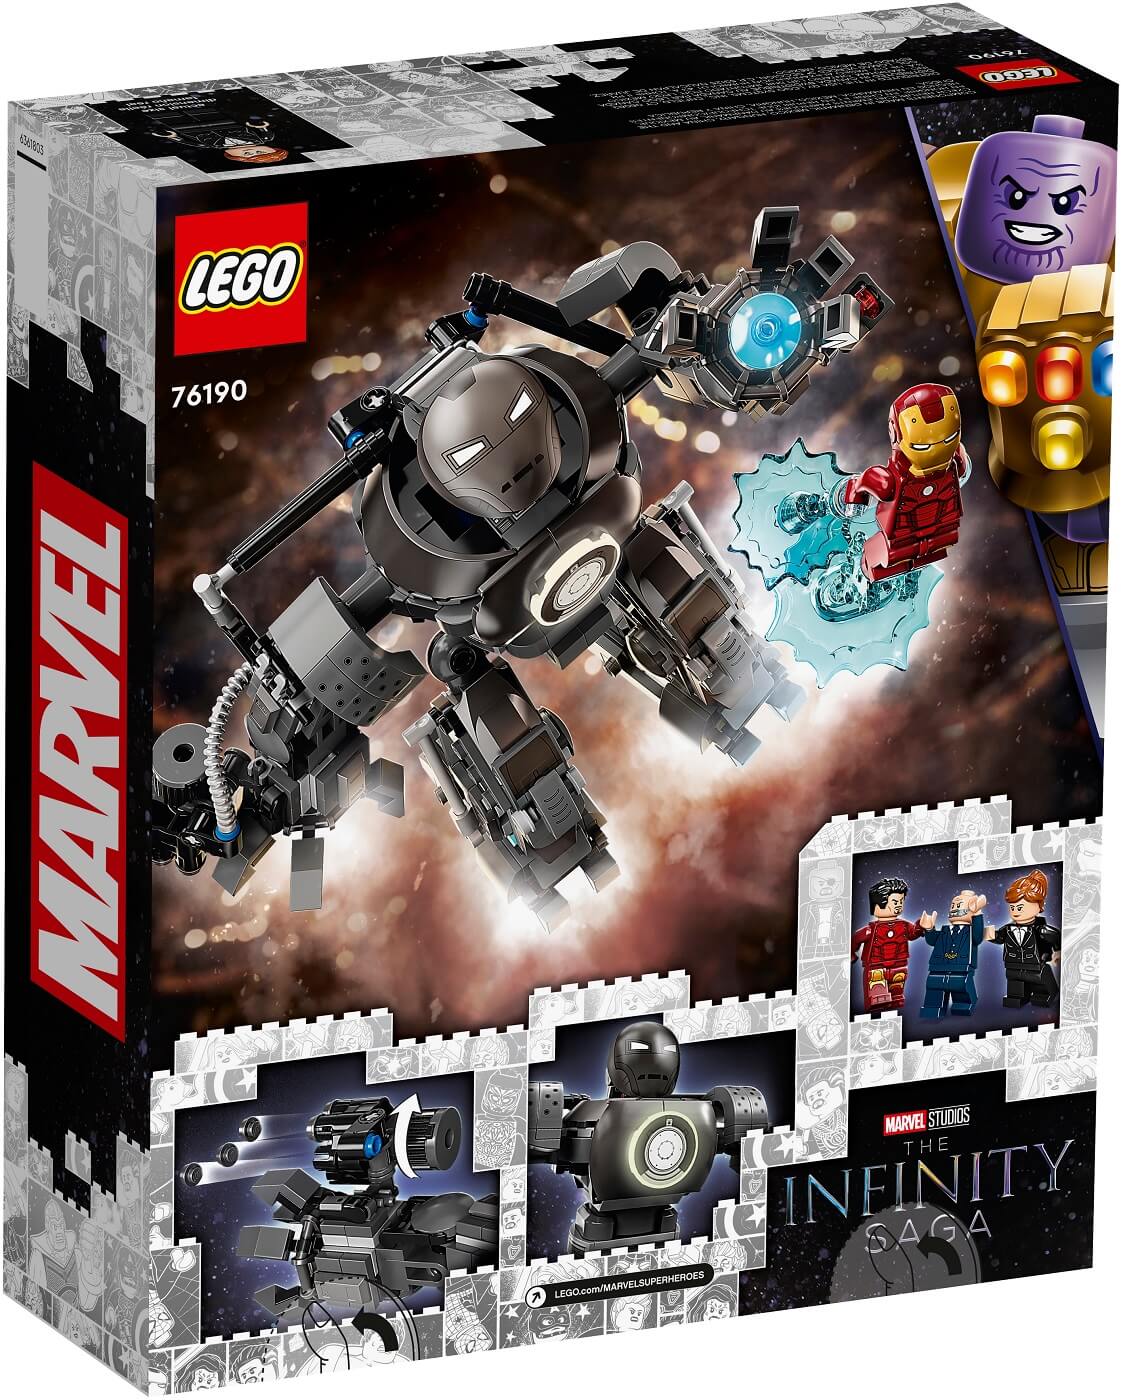 Iron Man Caos de Iron Monger ( Lego 76190 ) imagen h